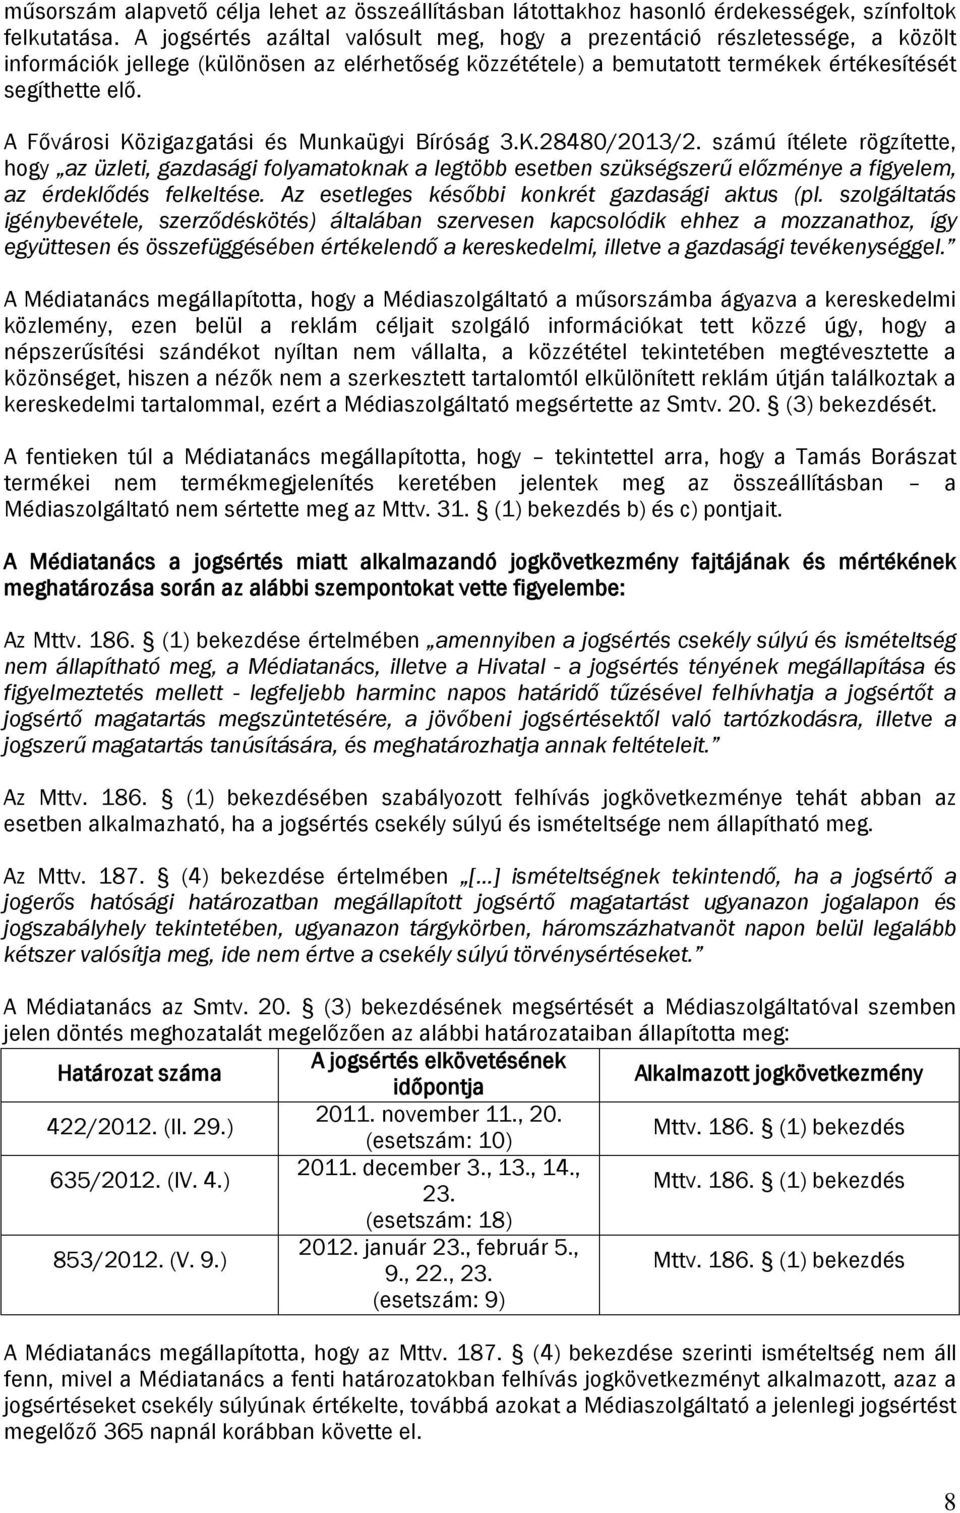 A Fővárosi Közigazgatási és Munkaügyi Bíróság 3.K.28480/2013/2.